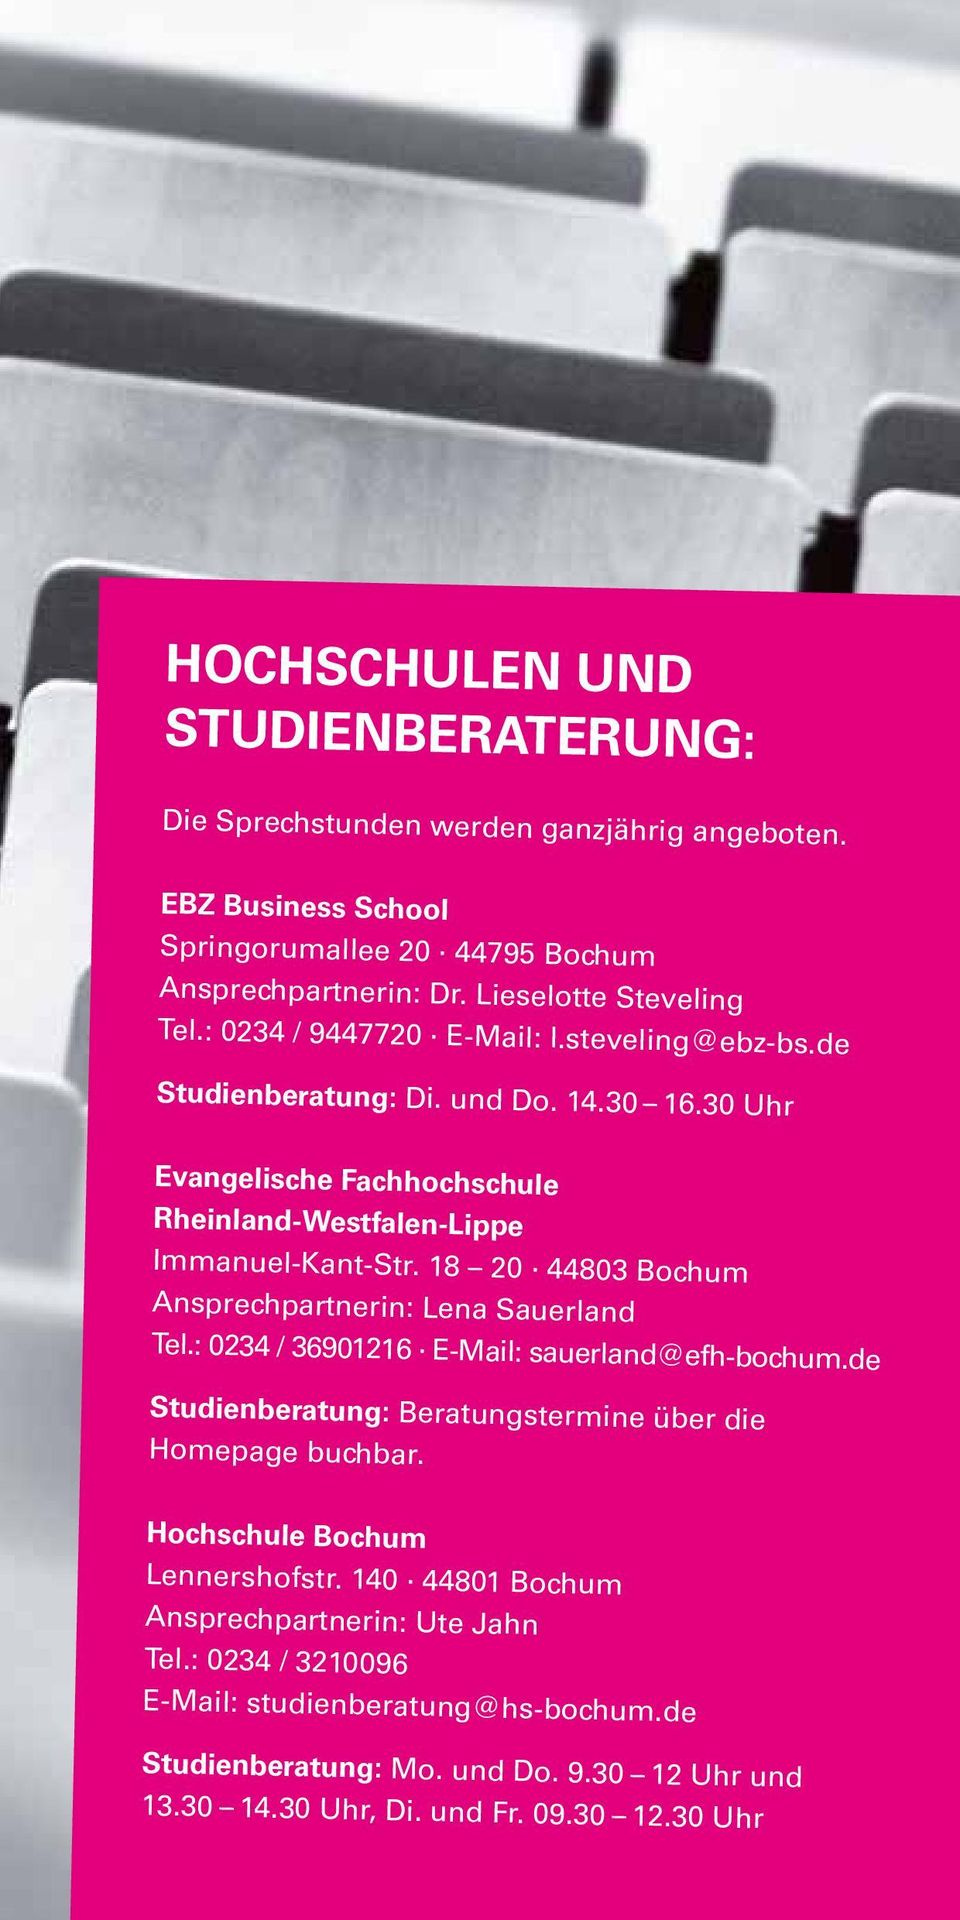 18 20 44803 Bochum Ansprechpartnerin: Lena Sauerland Tel.: 0234 / 36901216 E-Mail: sauerland@efh-bochum.de Studienberatung: Beratungstermine über die Homepage buchbar.